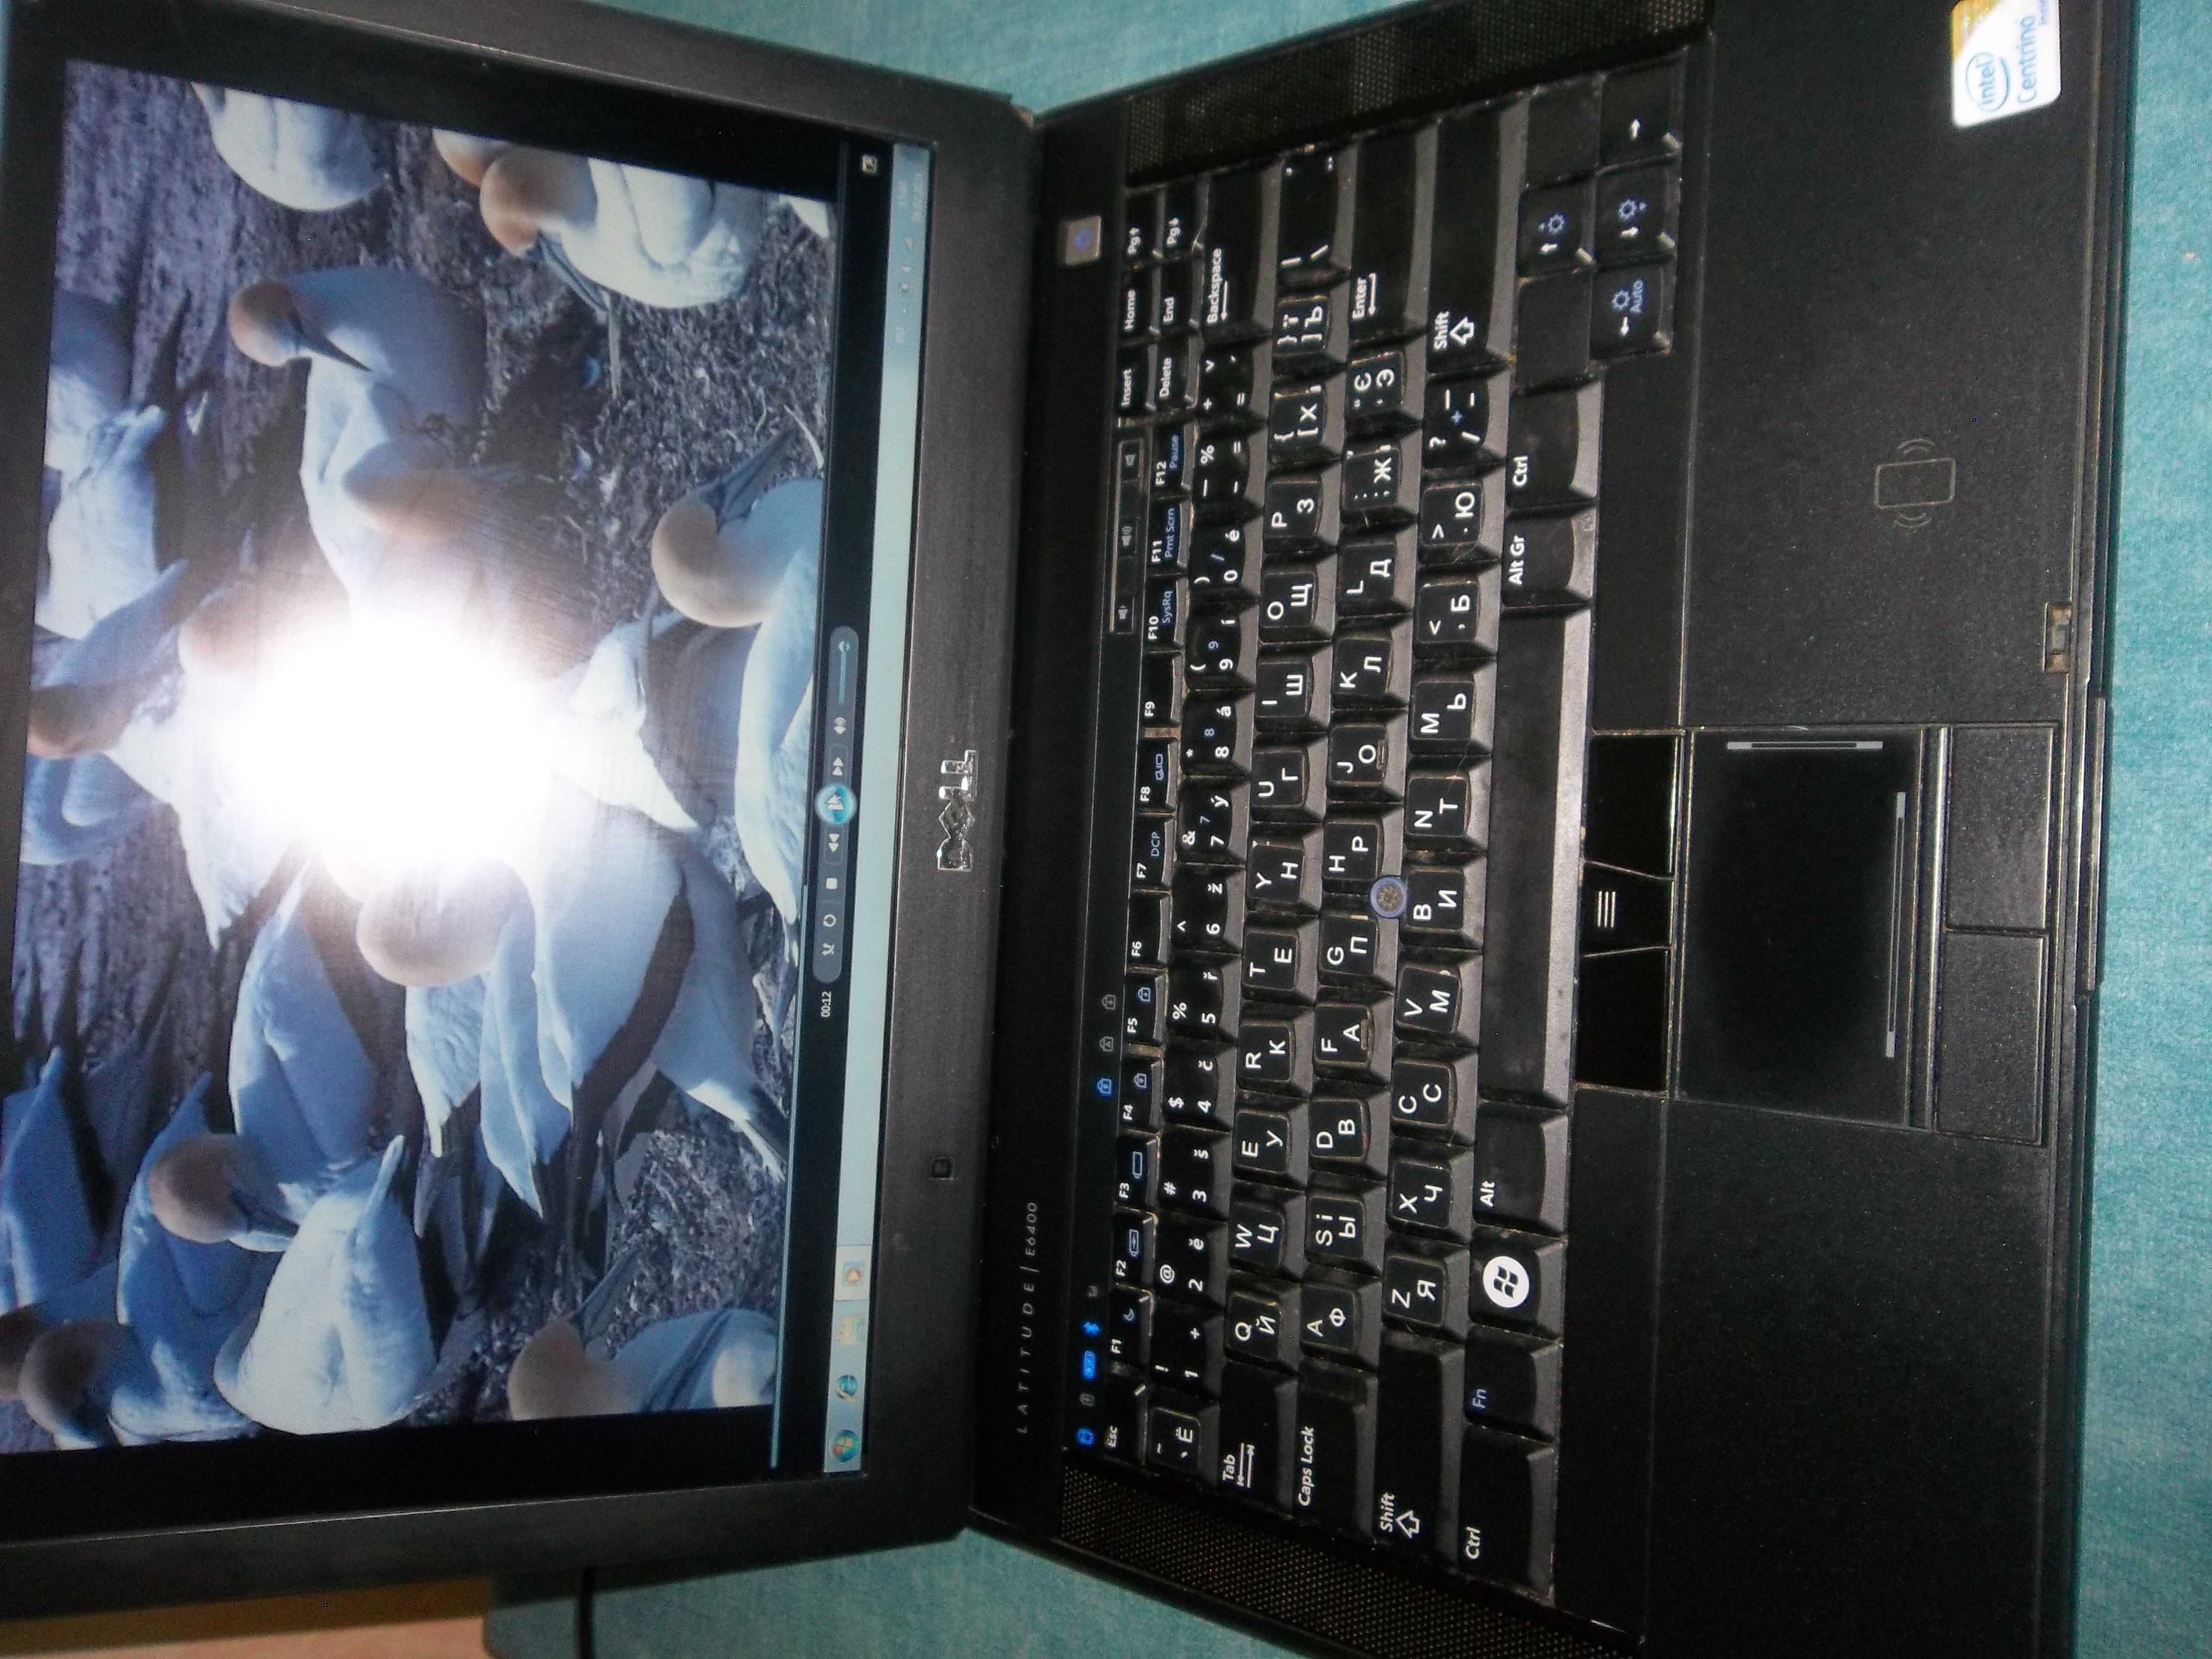 Ноутбук 14" Dell Latitude E6400 Core 2 Duo